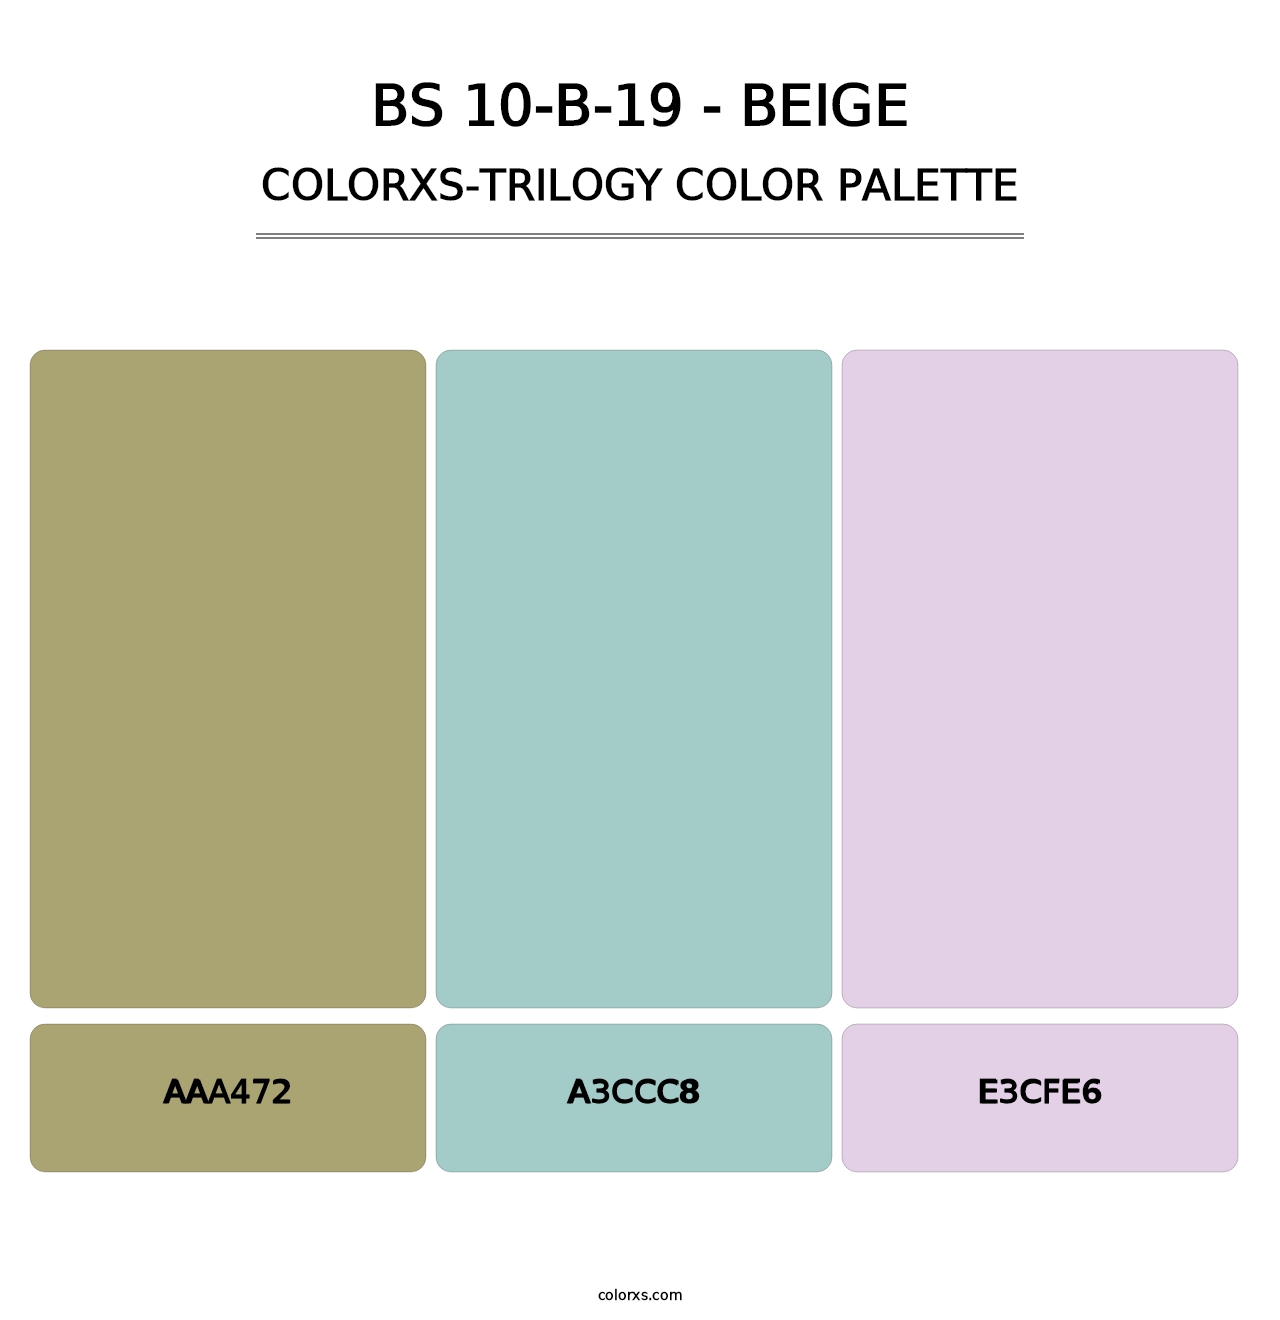 BS 10-B-19 - Beige - Colorxs Trilogy Palette